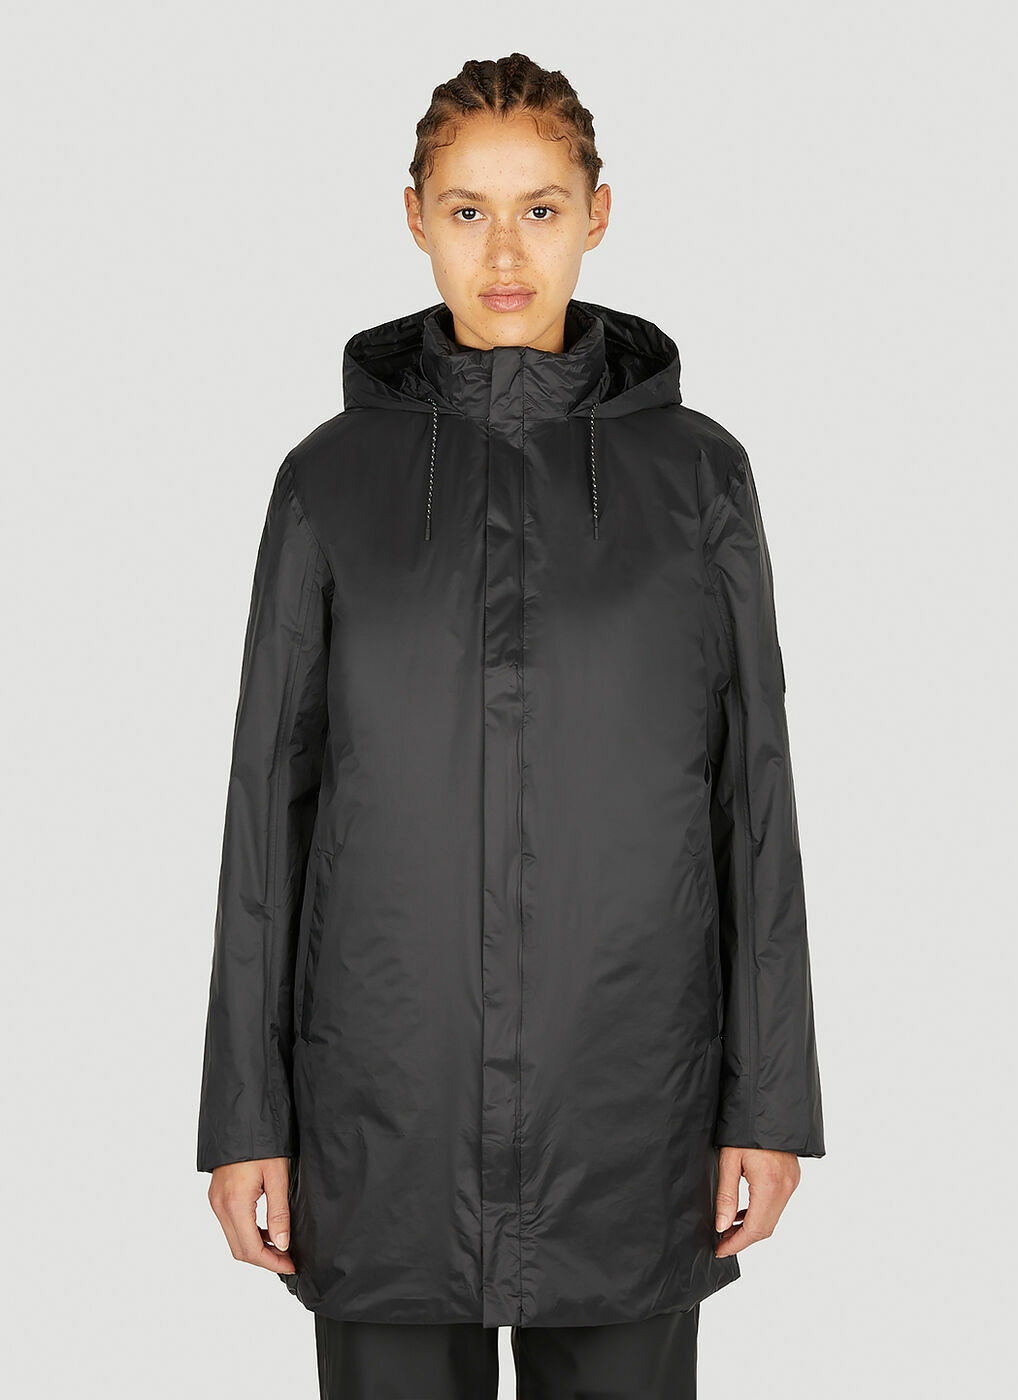 Rains - Fuse Coat in Black Rains